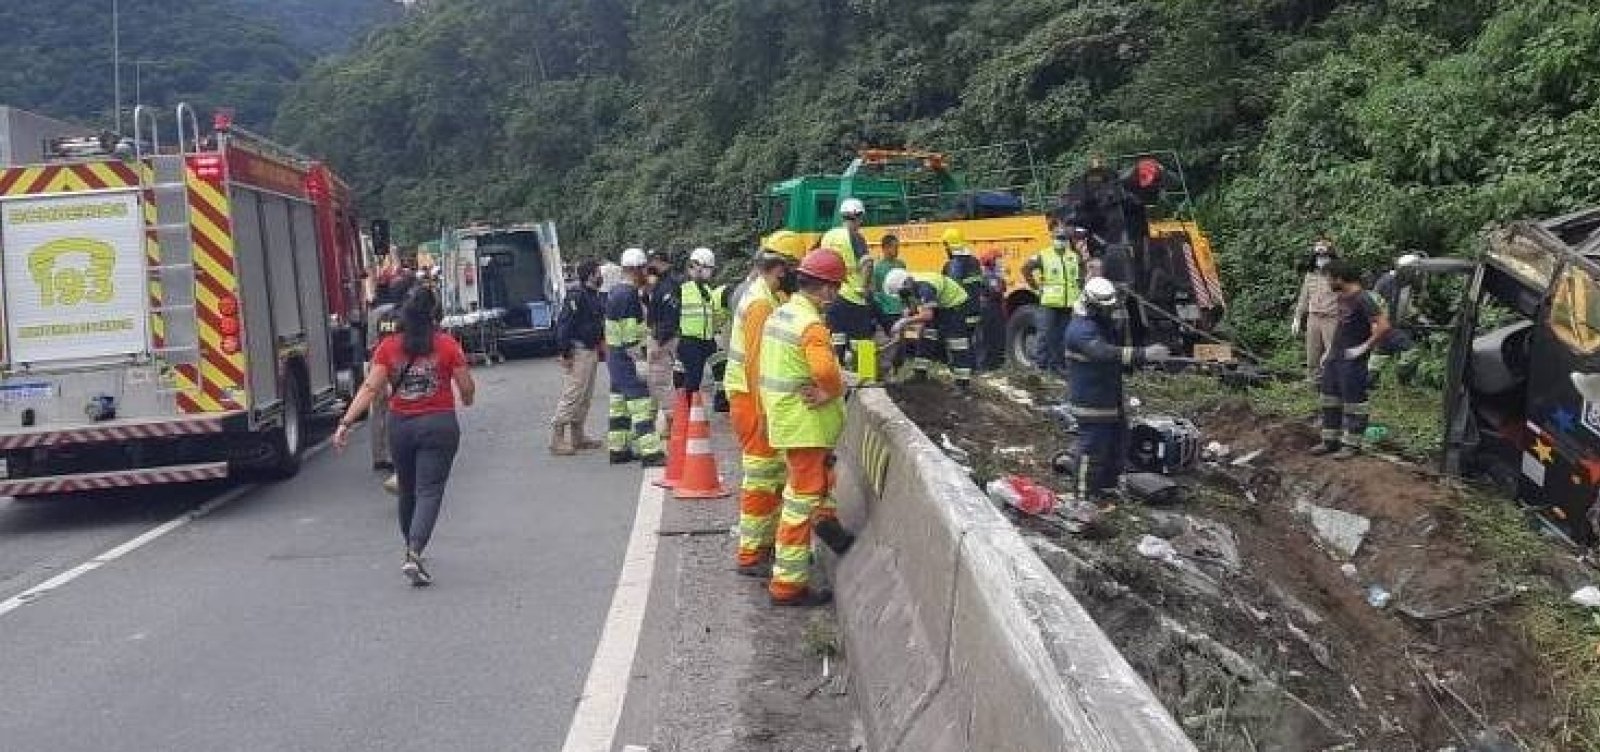 Acidente com ônibus de turismo no Paraná deixa ao menos 21 mortos e 33 feridos 